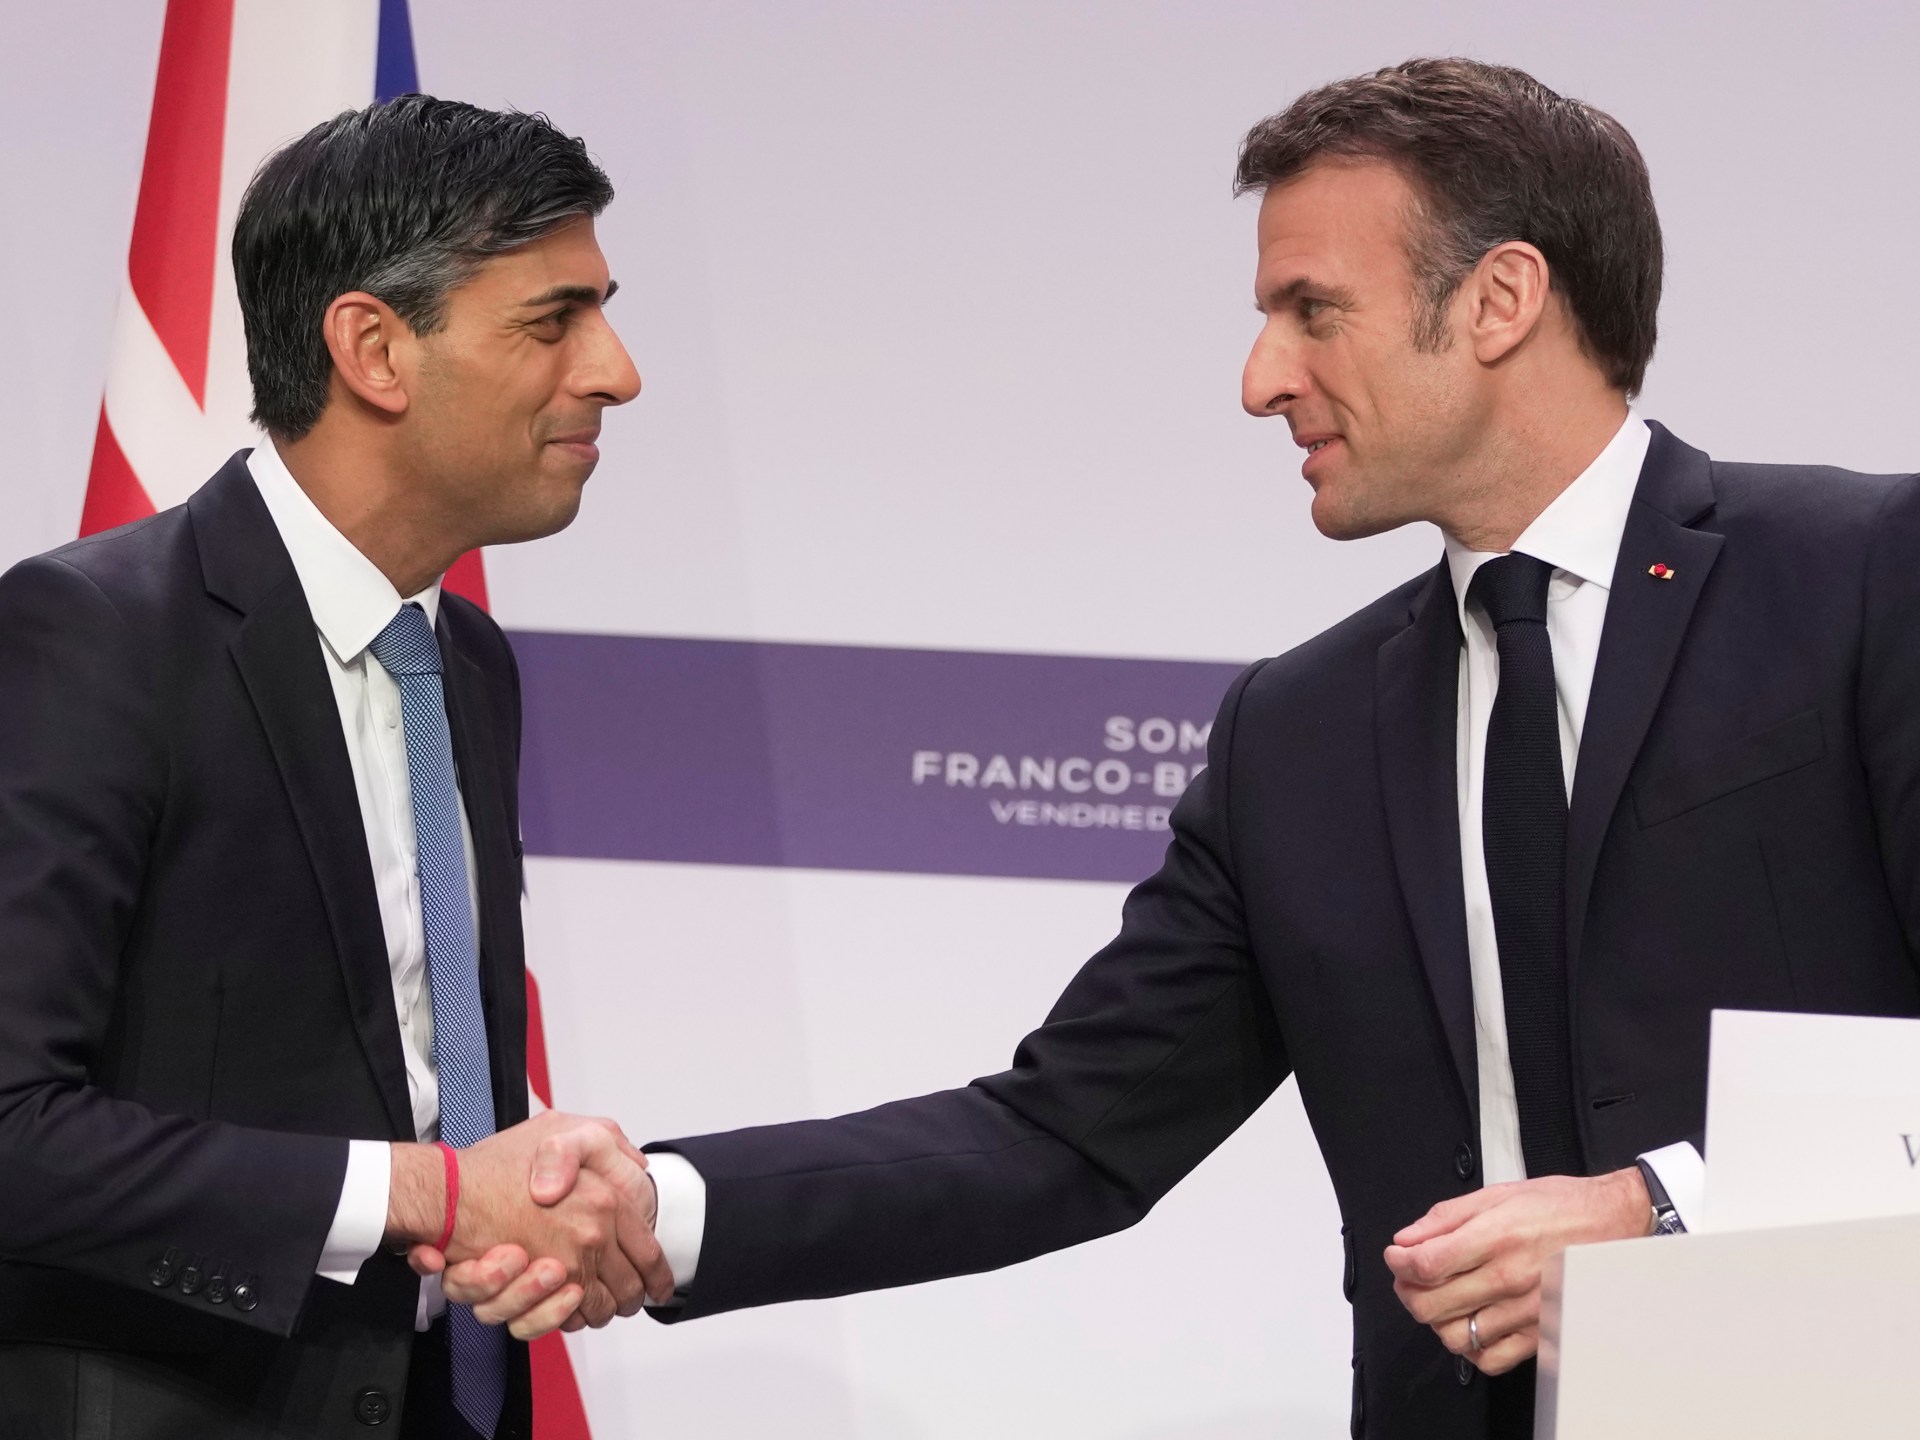 Photo of La Grande-Bretagne finance un site de détention en France, les dirigeants conviennent d’un accord sur l’immigration |  Nouvelles de l’immigration